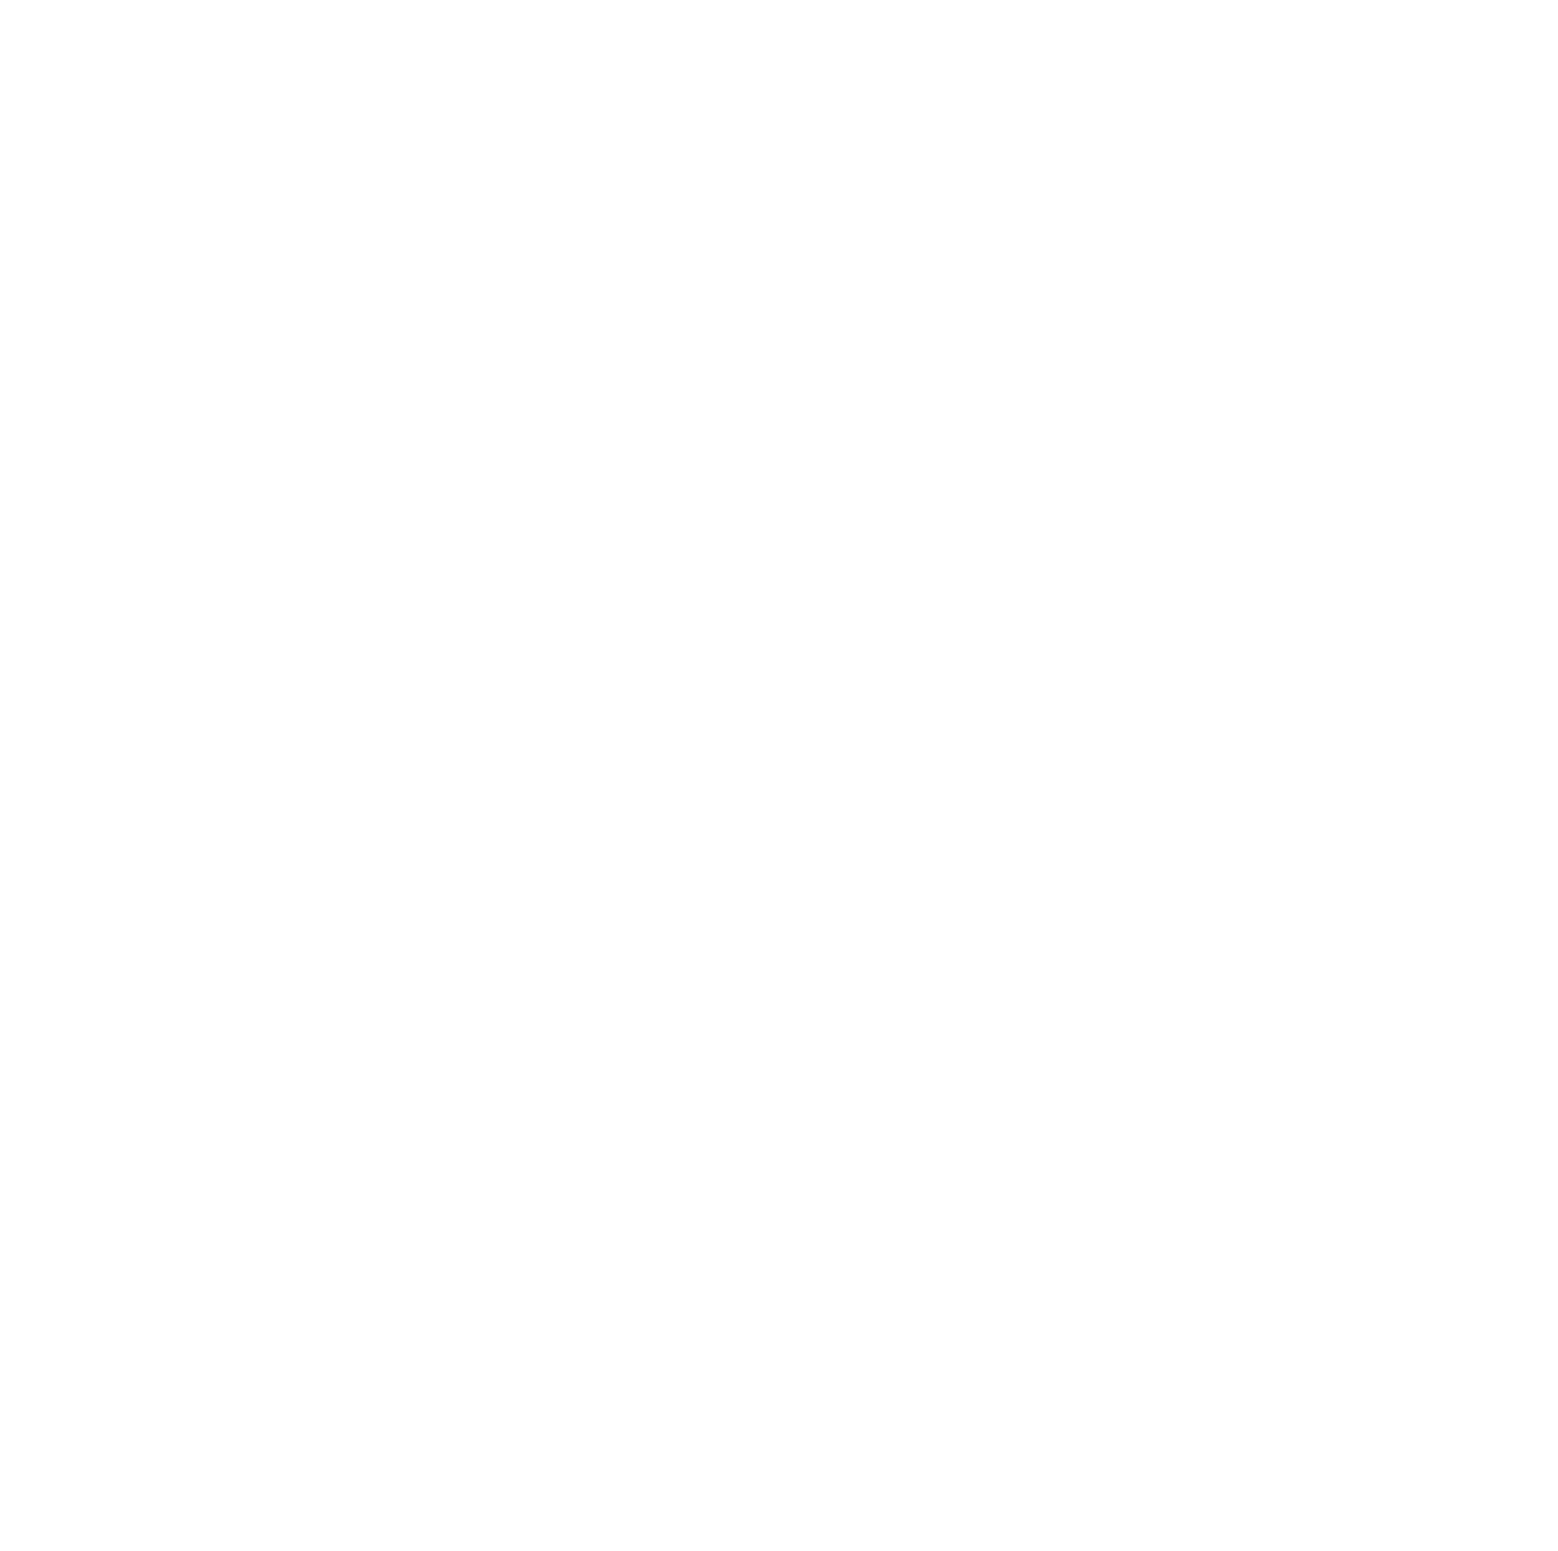 Björn Borg logo for dark backgrounds (transparent PNG)